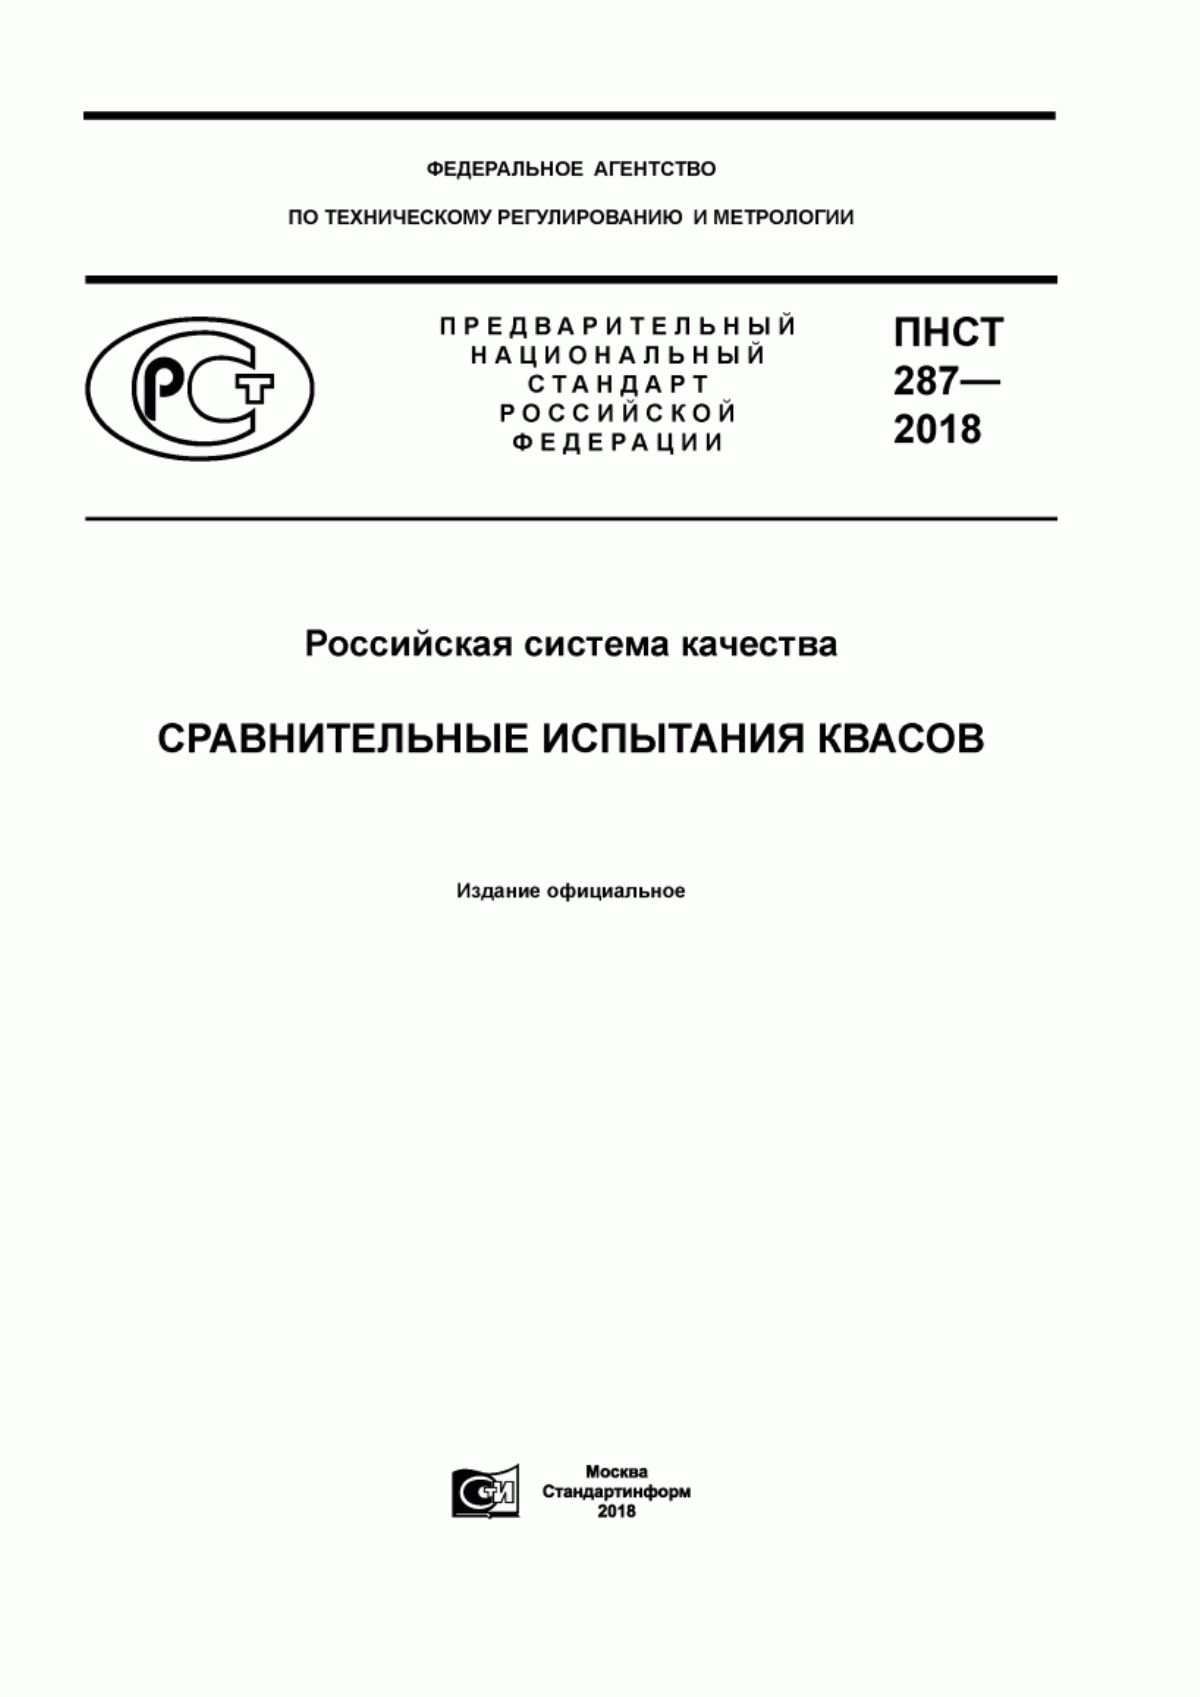 ПНСТ 287-2018 Российская система качества. Сравнительные испытания квасов